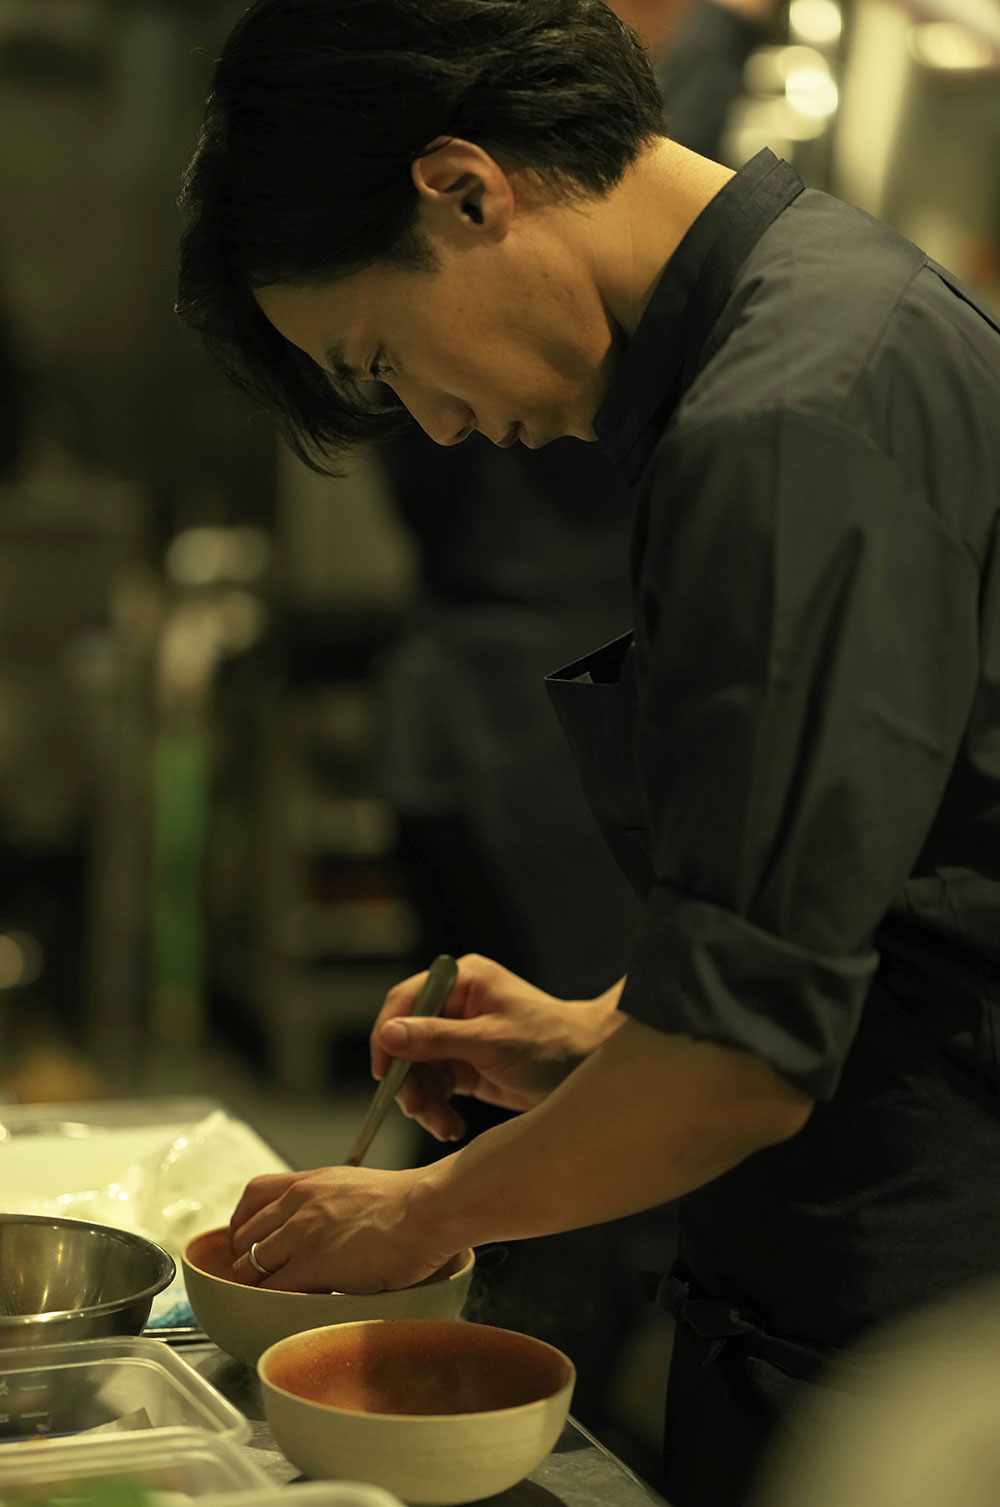 「レストランμ」は全員20代、7人の厨房スタッフが、新しい伝統の味を築き上げようと仕事に打ち込んでいる。